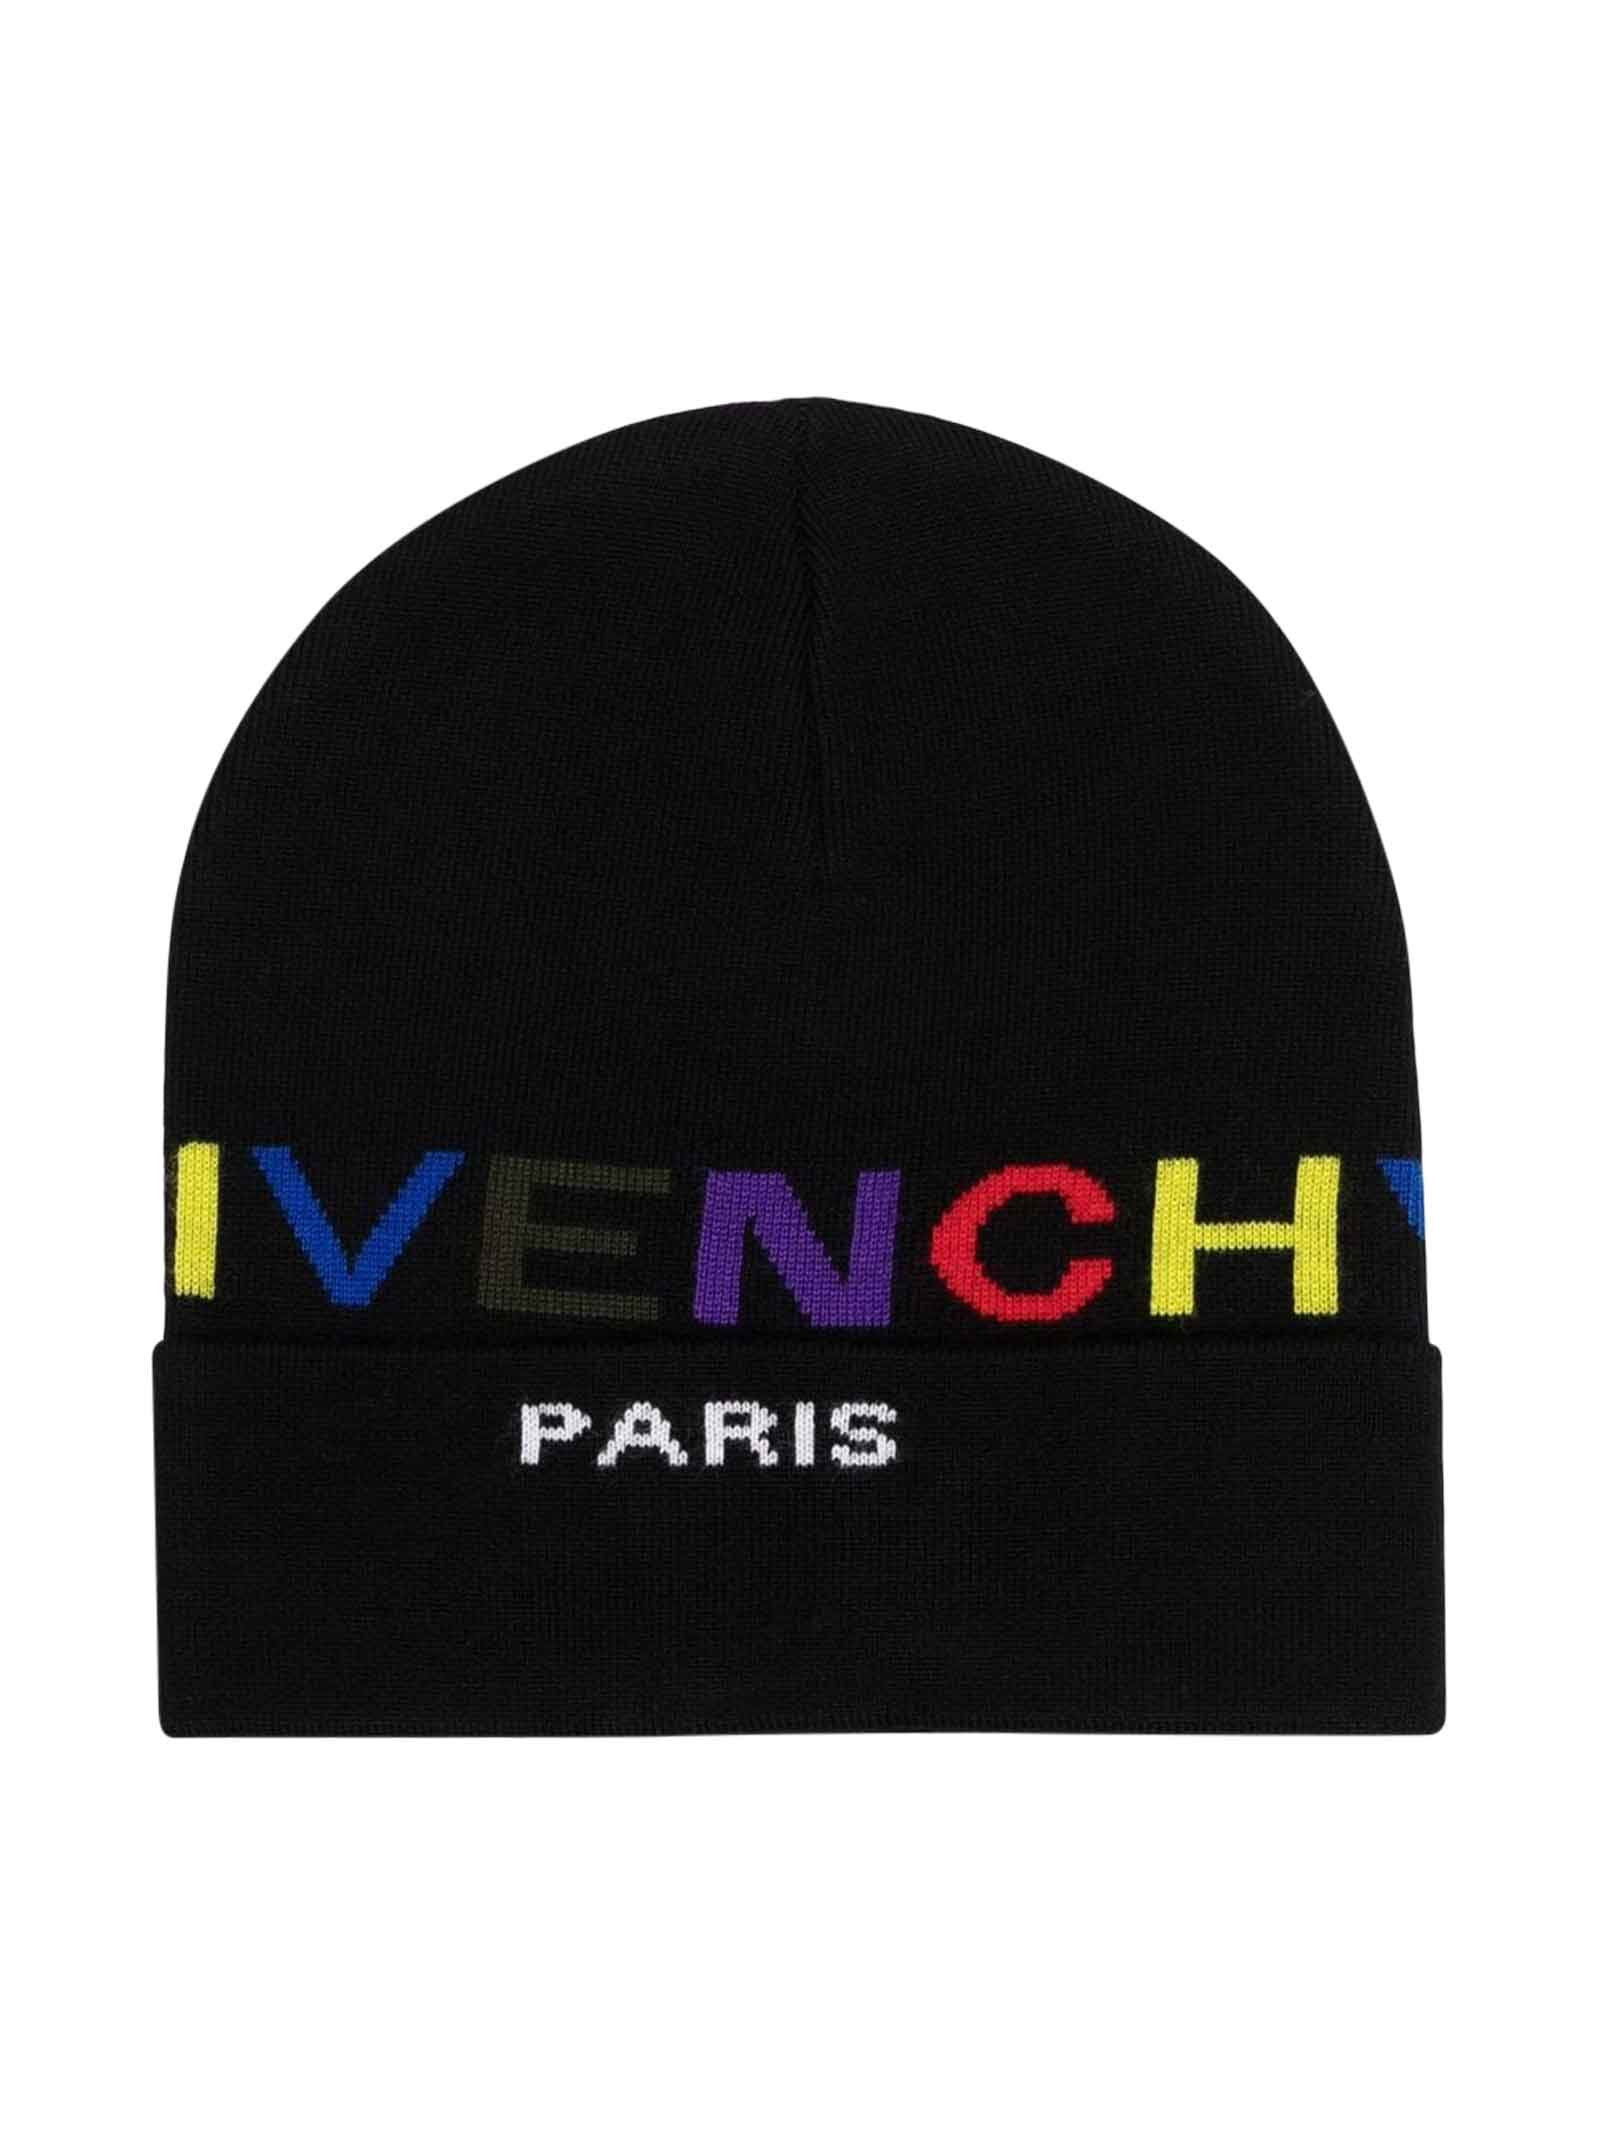 Givenchy Black Hat Unisex